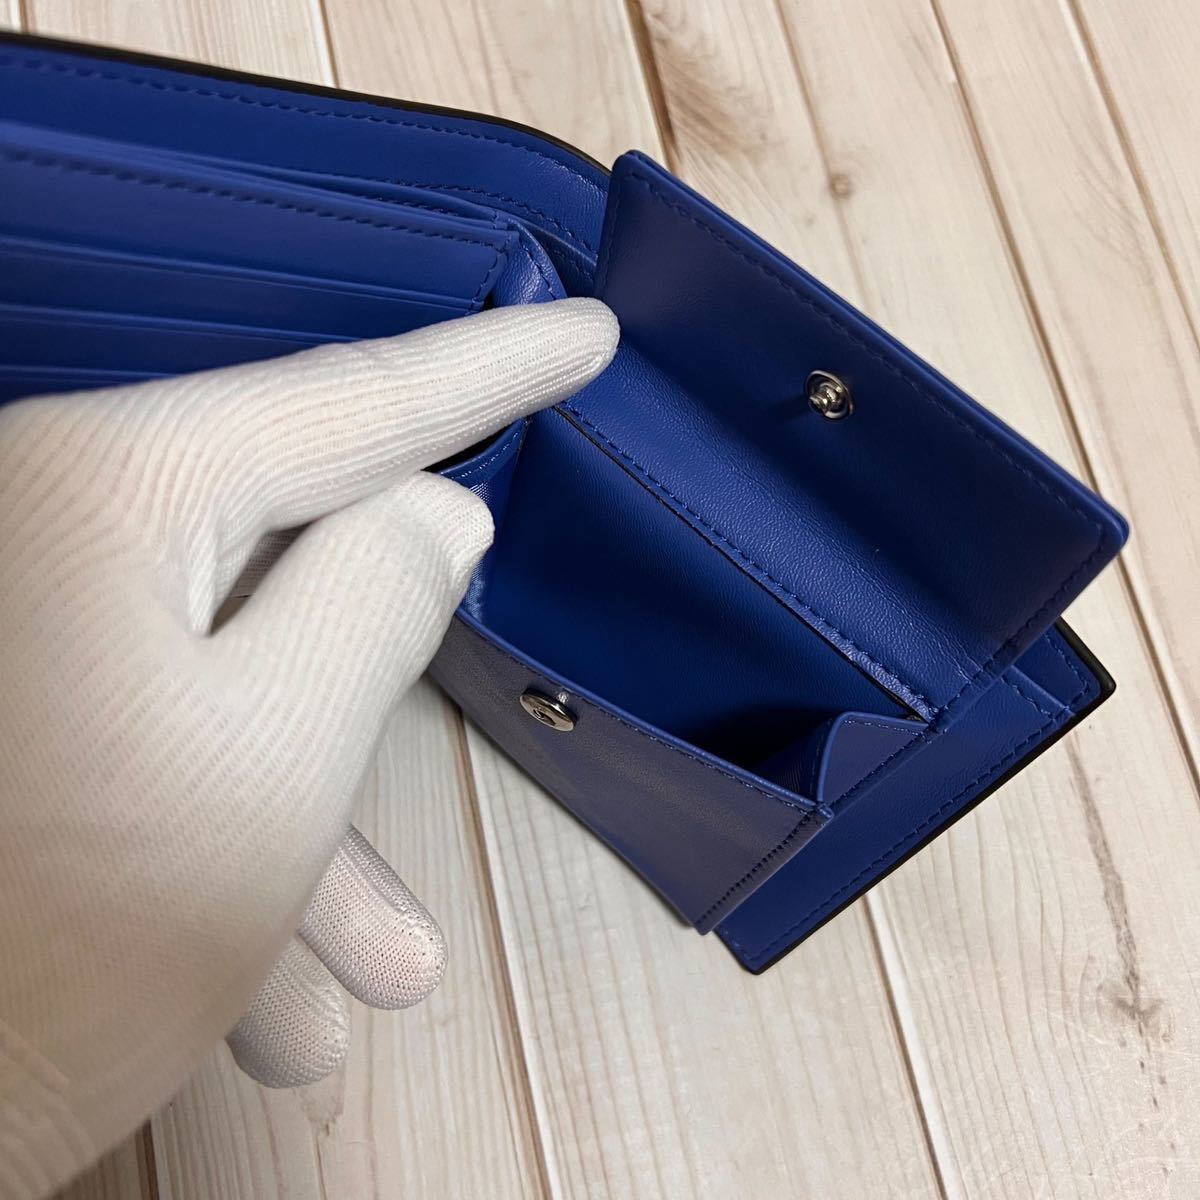  новый продукт товар оттенок голубого ограниченное количество закончился последовательность конец кожа кожа двойной бумажник / кошелек для мелочи . compact 